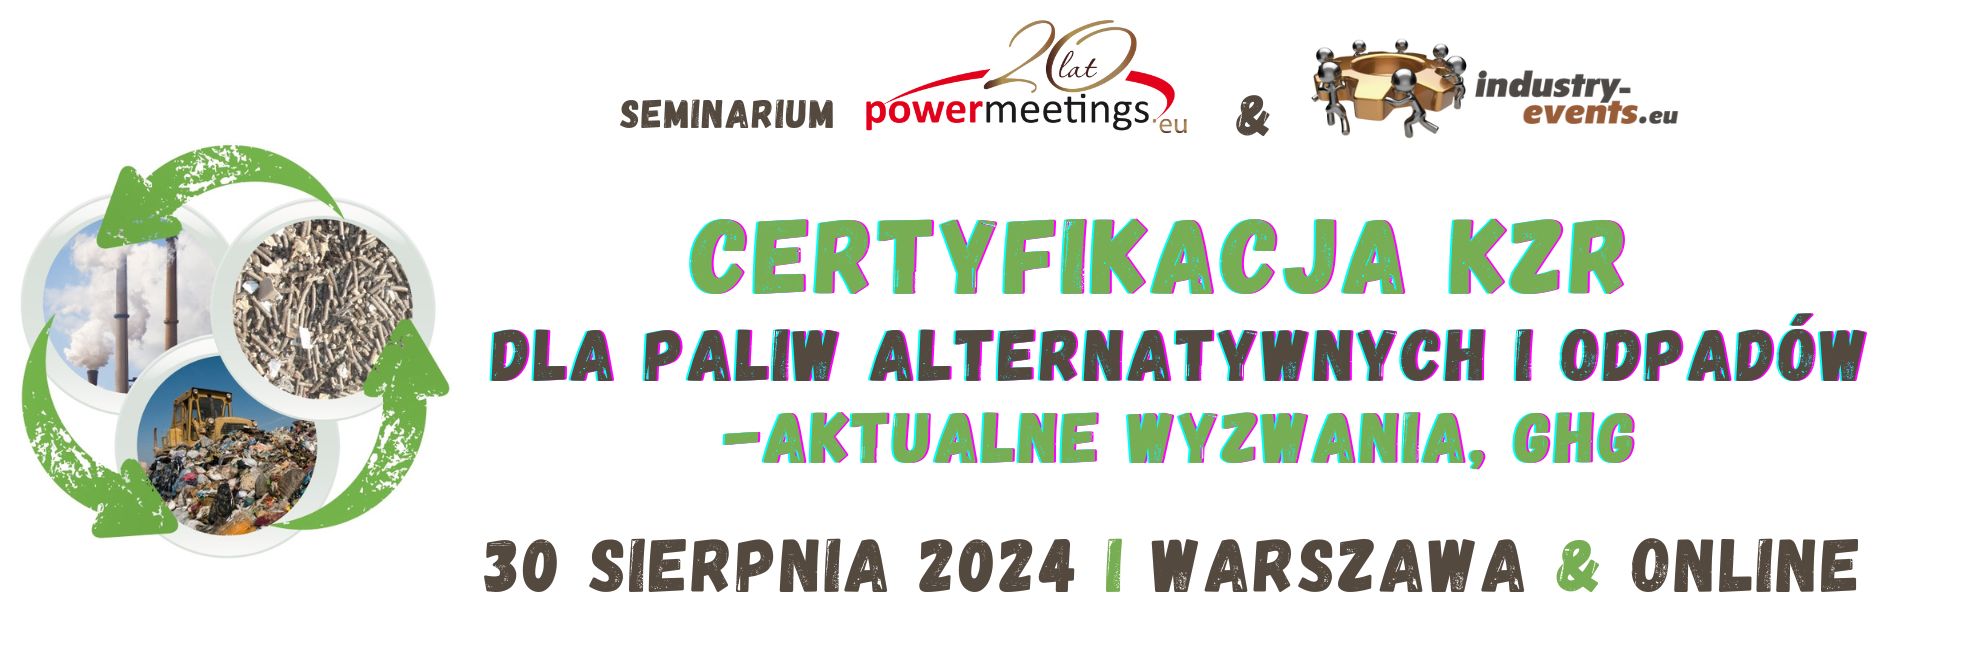 Certyfikacja KZR dla paliw alternatywnych oraz odpadów sierpień 2024